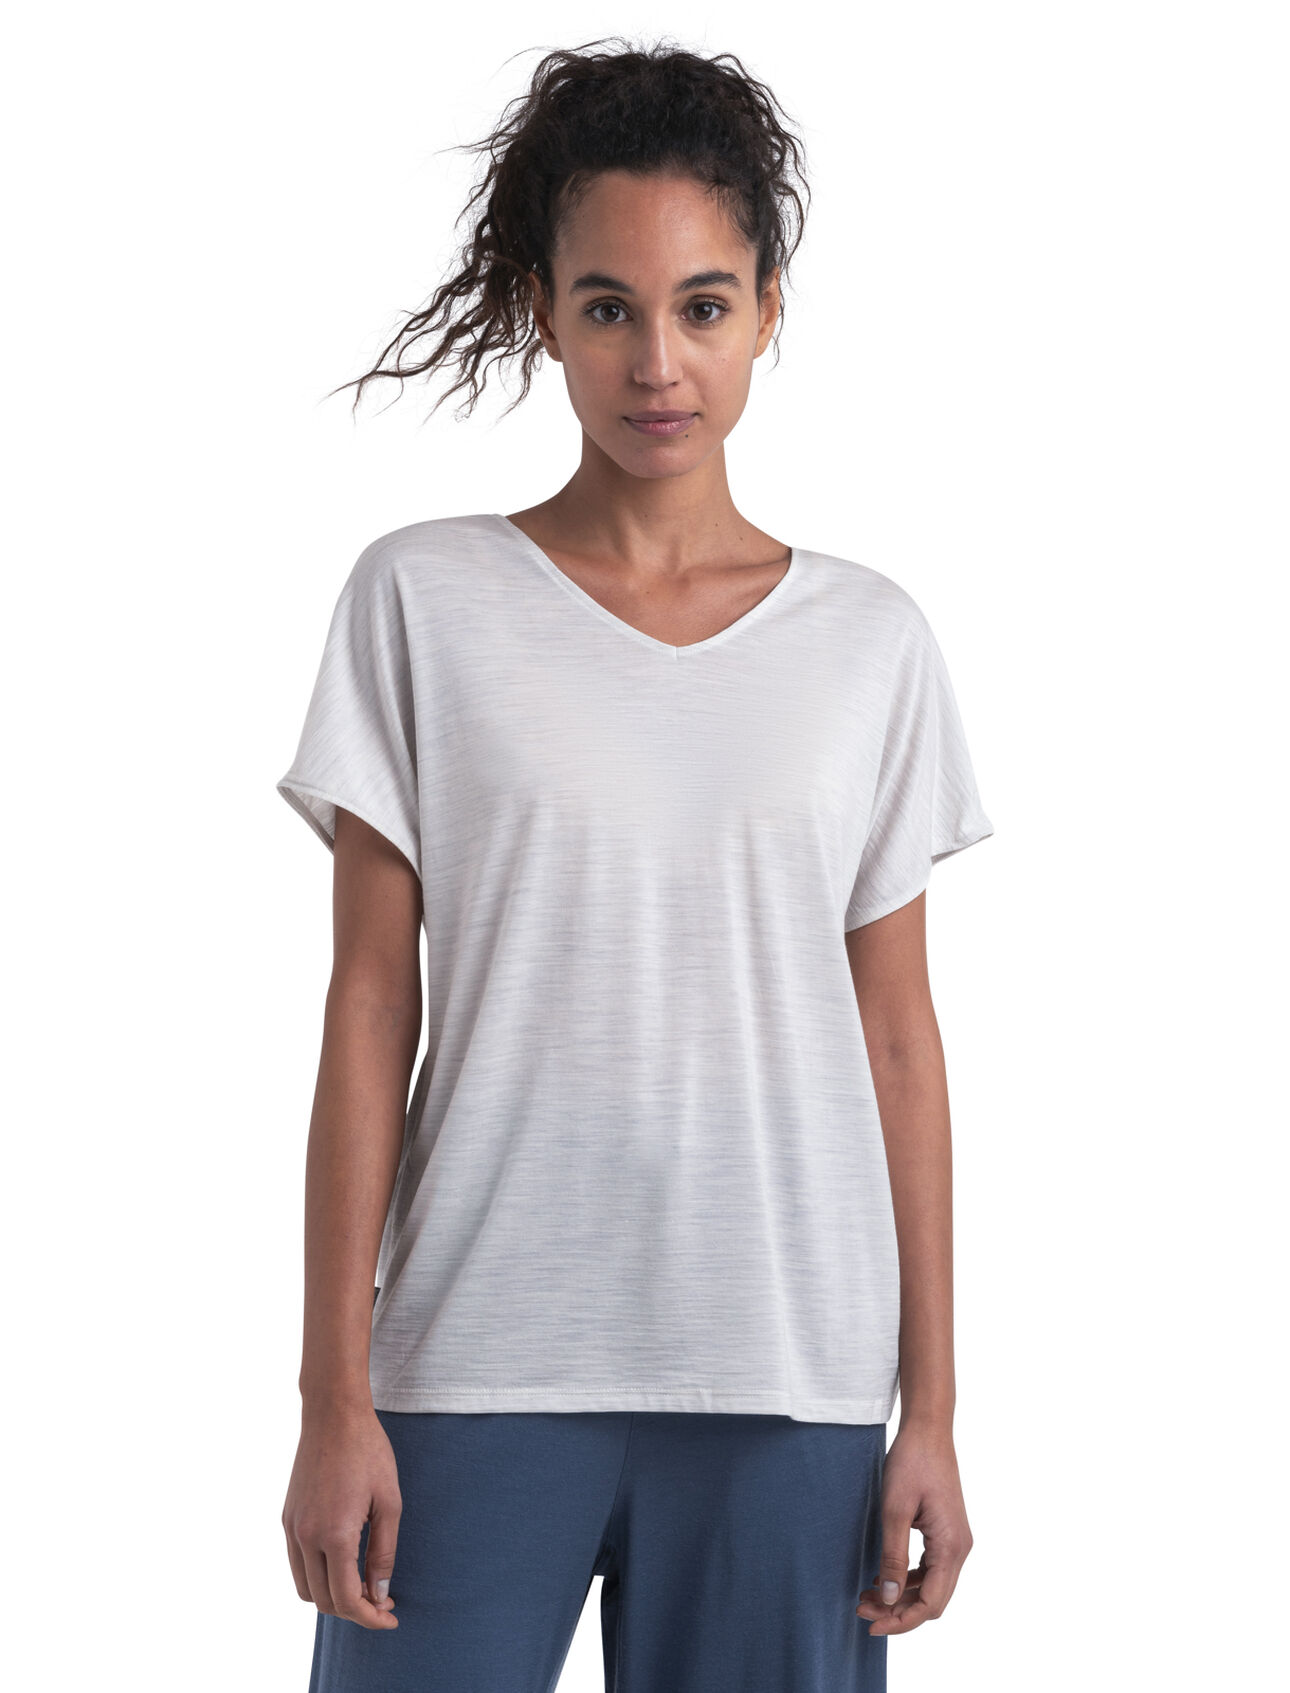 Merinomix Drayden Reversible T-Shirt Damen Ein äußerst vielseitiges T-Shirt für jeden Tag aus unserem Cool-Lite™ Jersey, das wendbare Drayden T-Shirt kann als softes V-Shirt oder umgekehrt als hohes Rundhals-Shirt getragen werden.